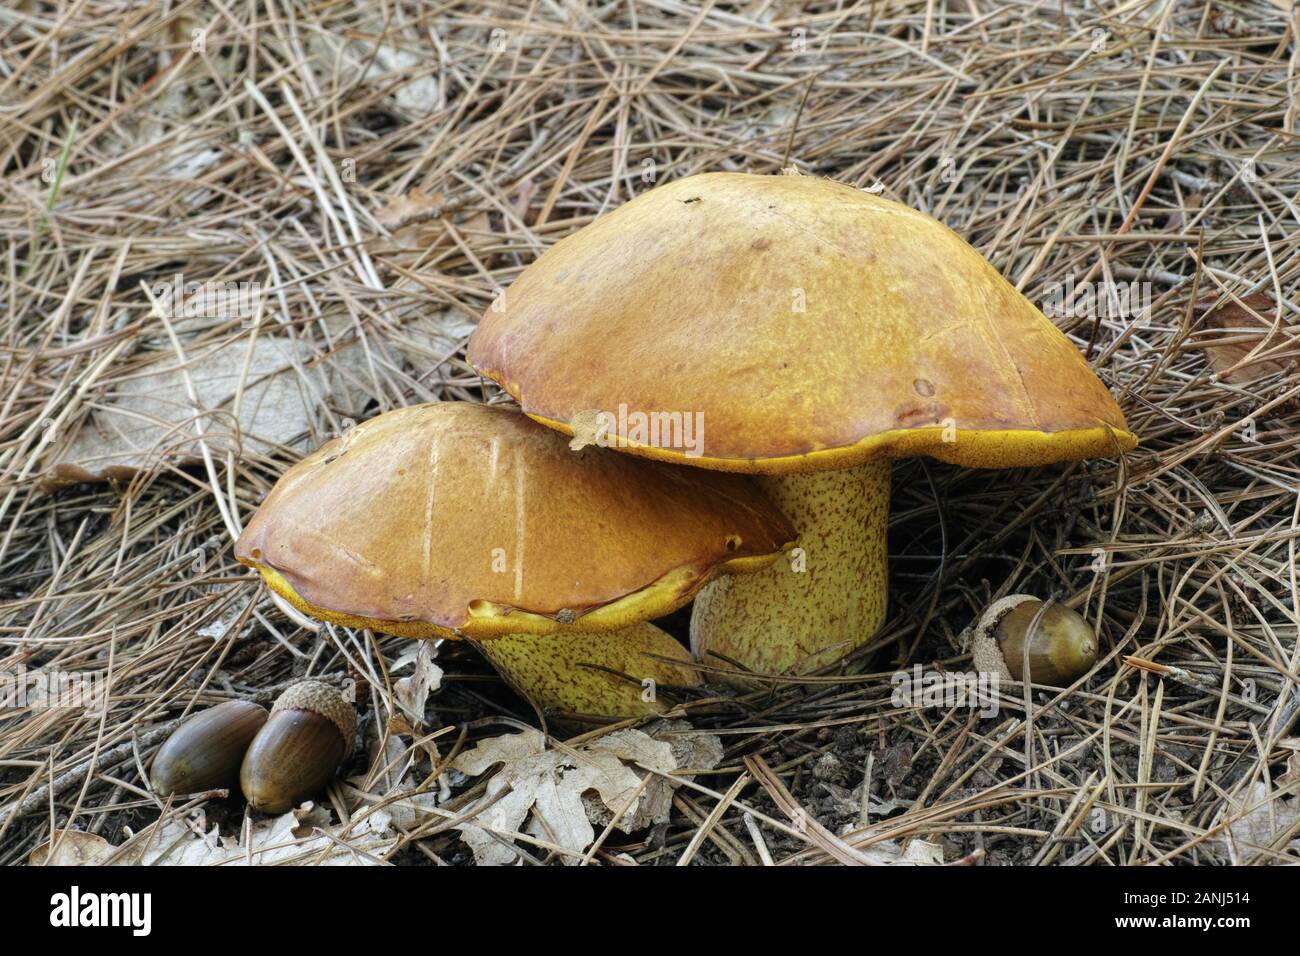 specimen of jerrsey cow mushroom, suillus bovinus Stock Photo